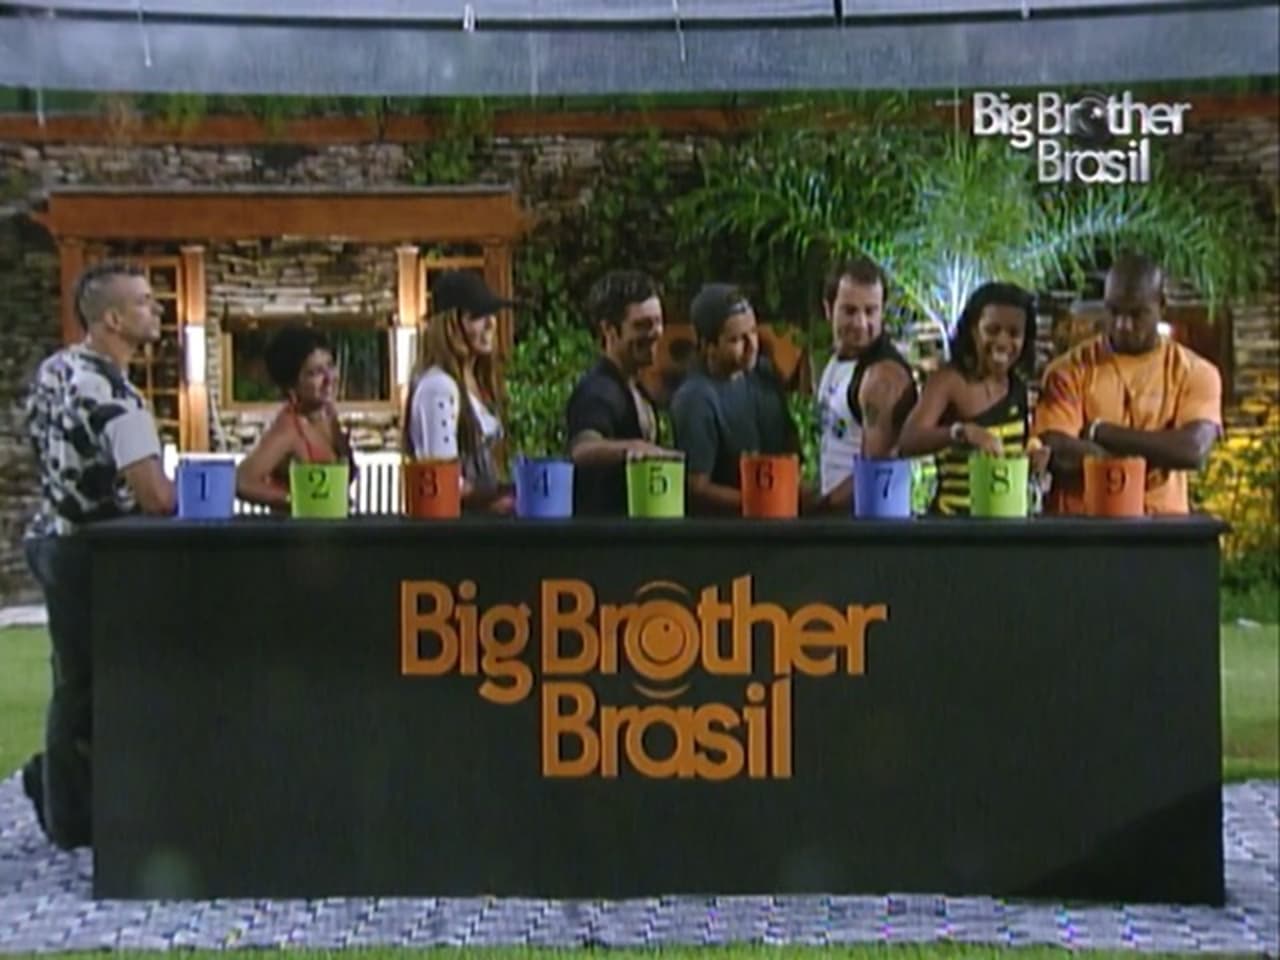 Big Brother Brasil - Season 4 Episode 38 : Episode 38